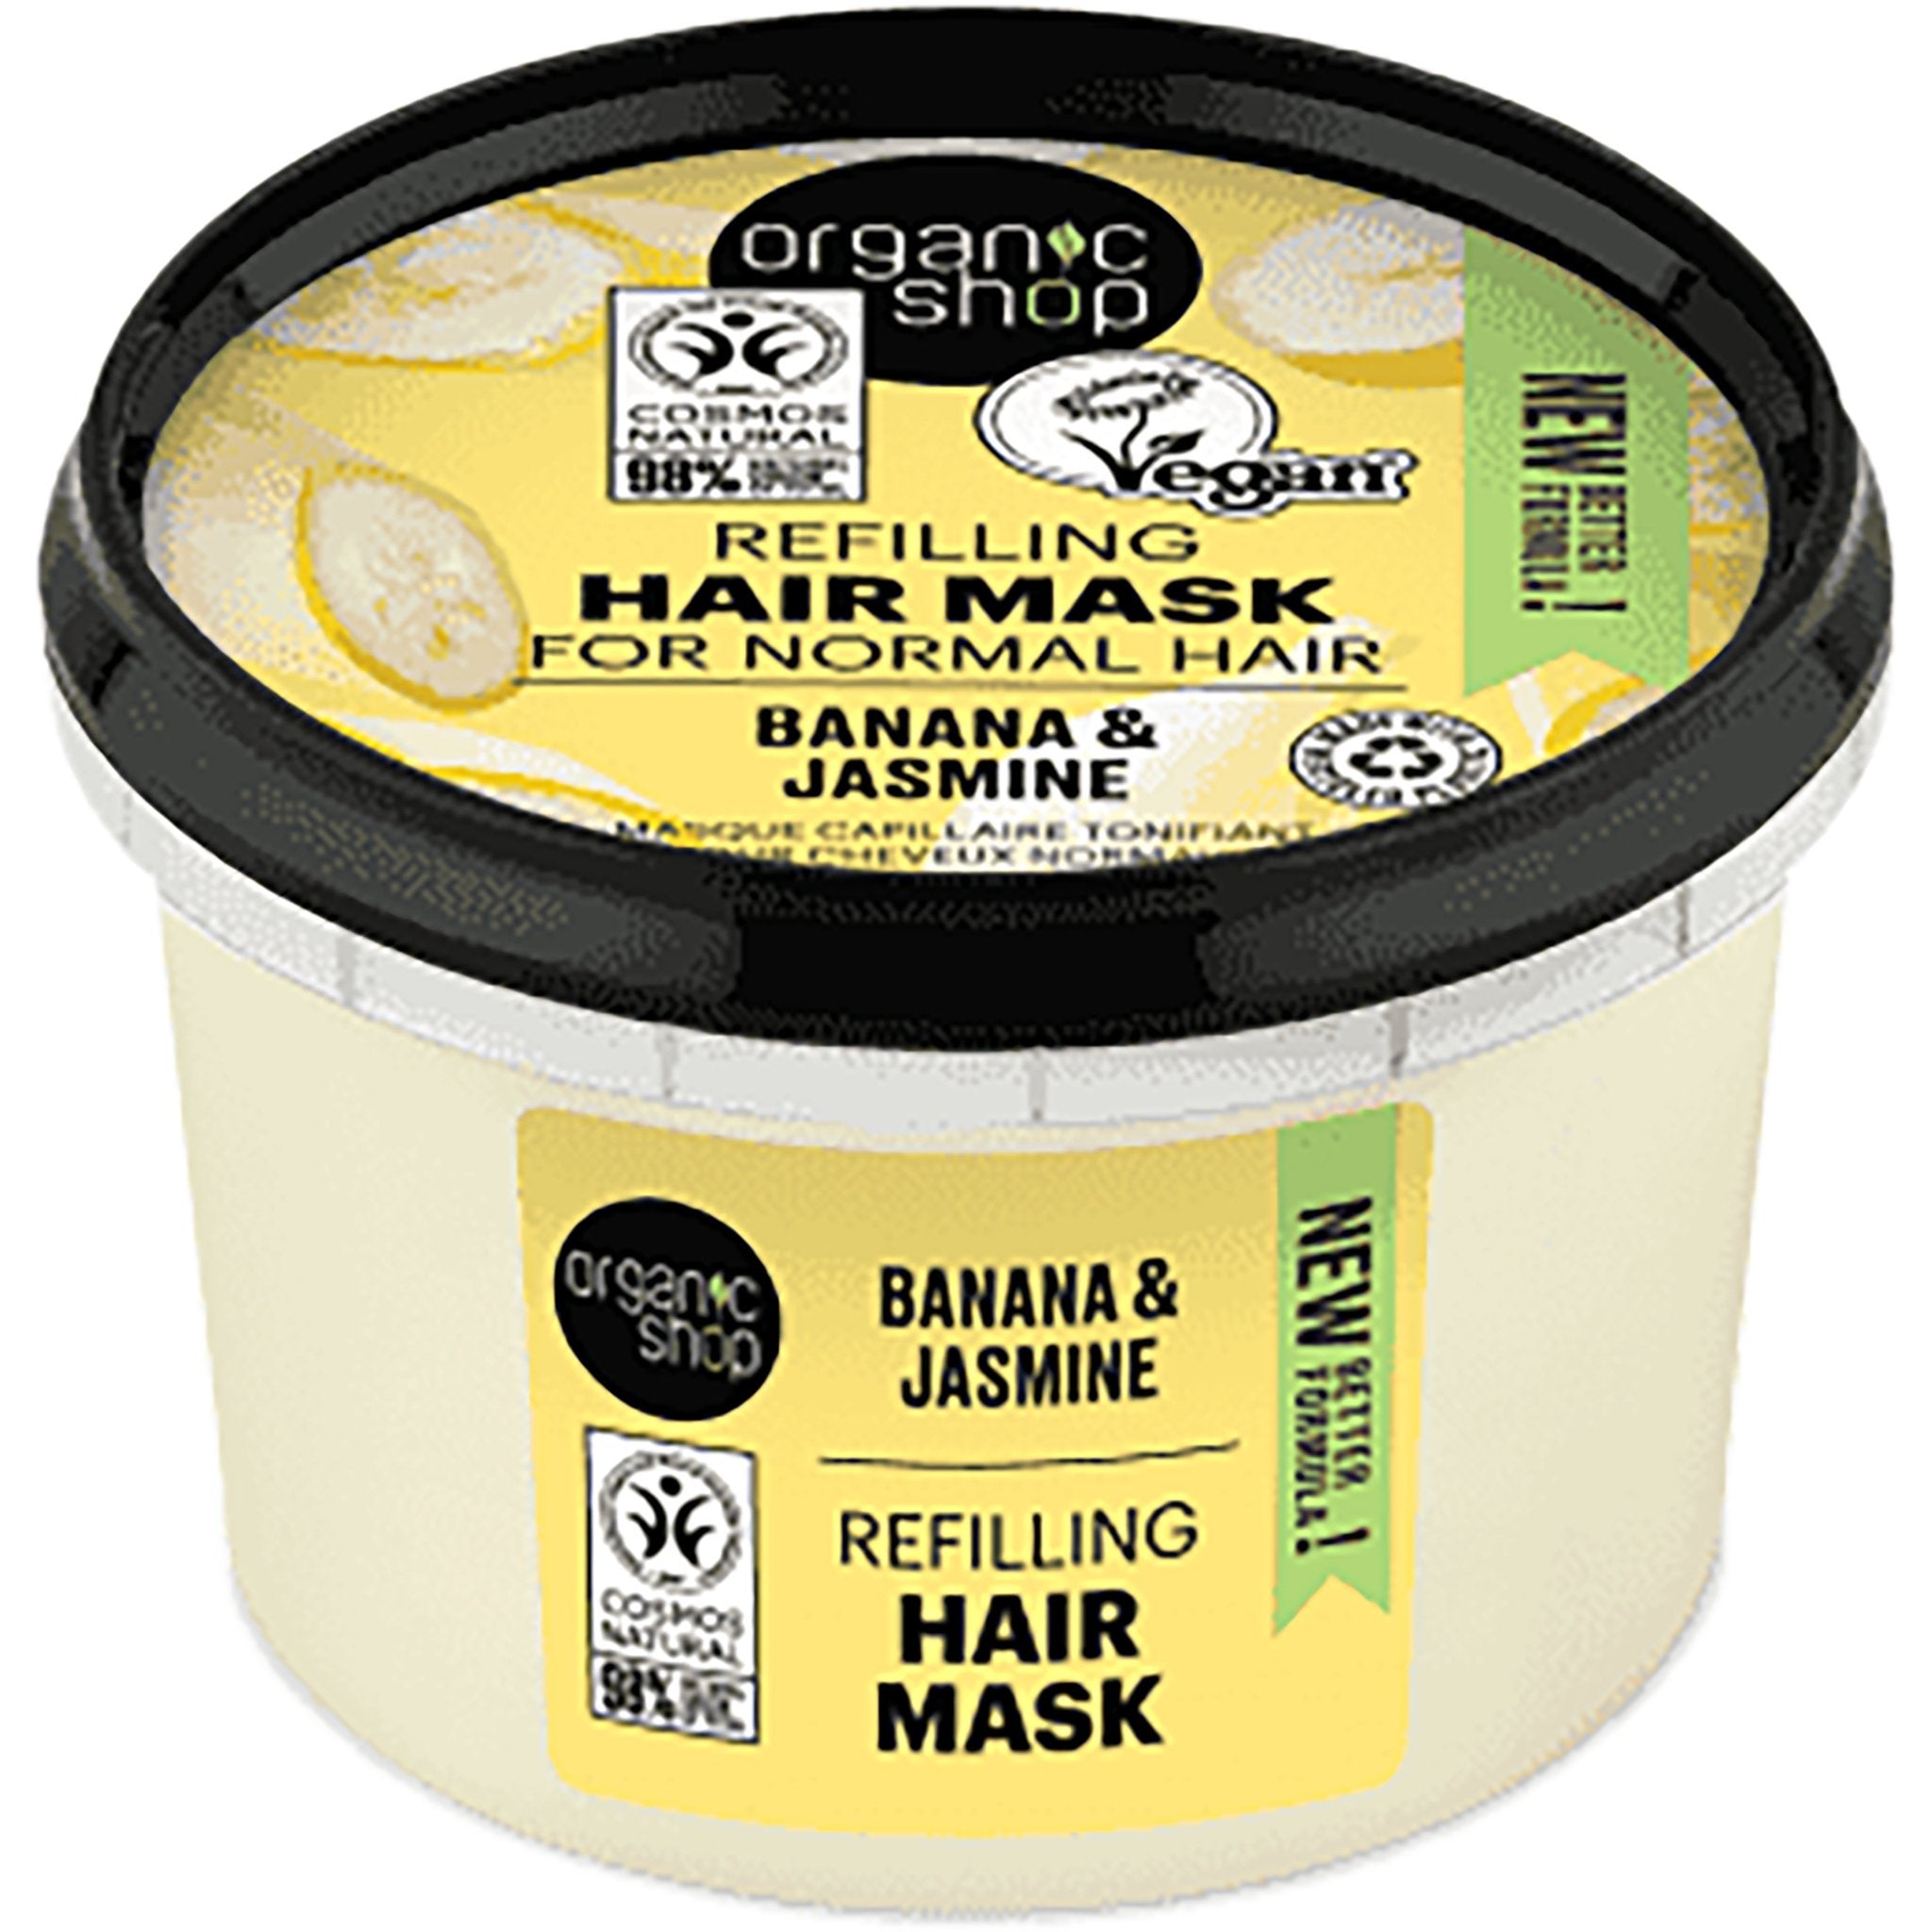 NEW Banana & Jasmine Refilling Hair Mask - mypure.co.uk